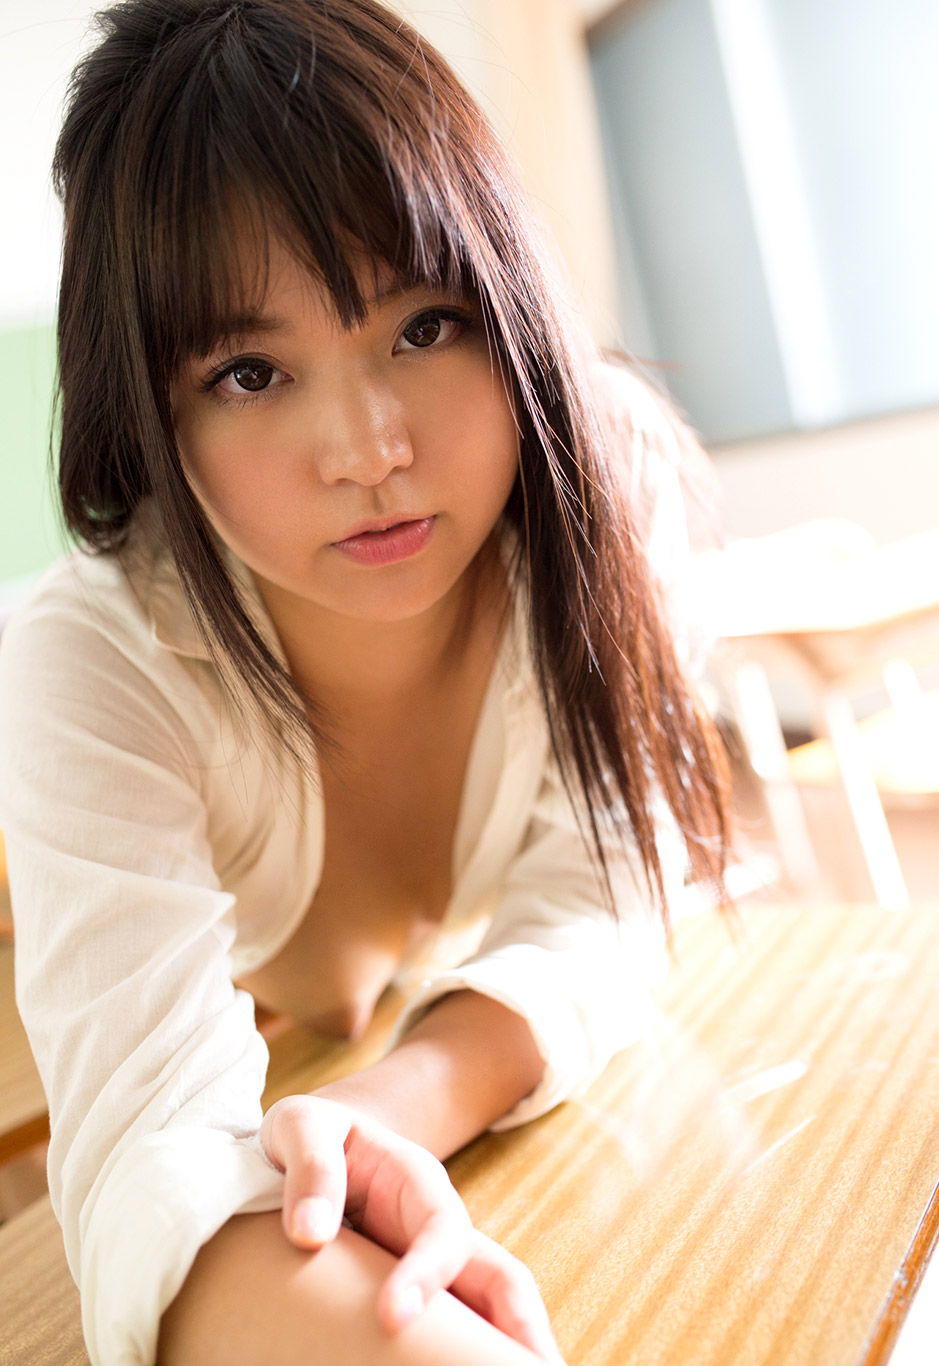 Nana Ayano Actress Jav Tube Japanese Porn Streaming